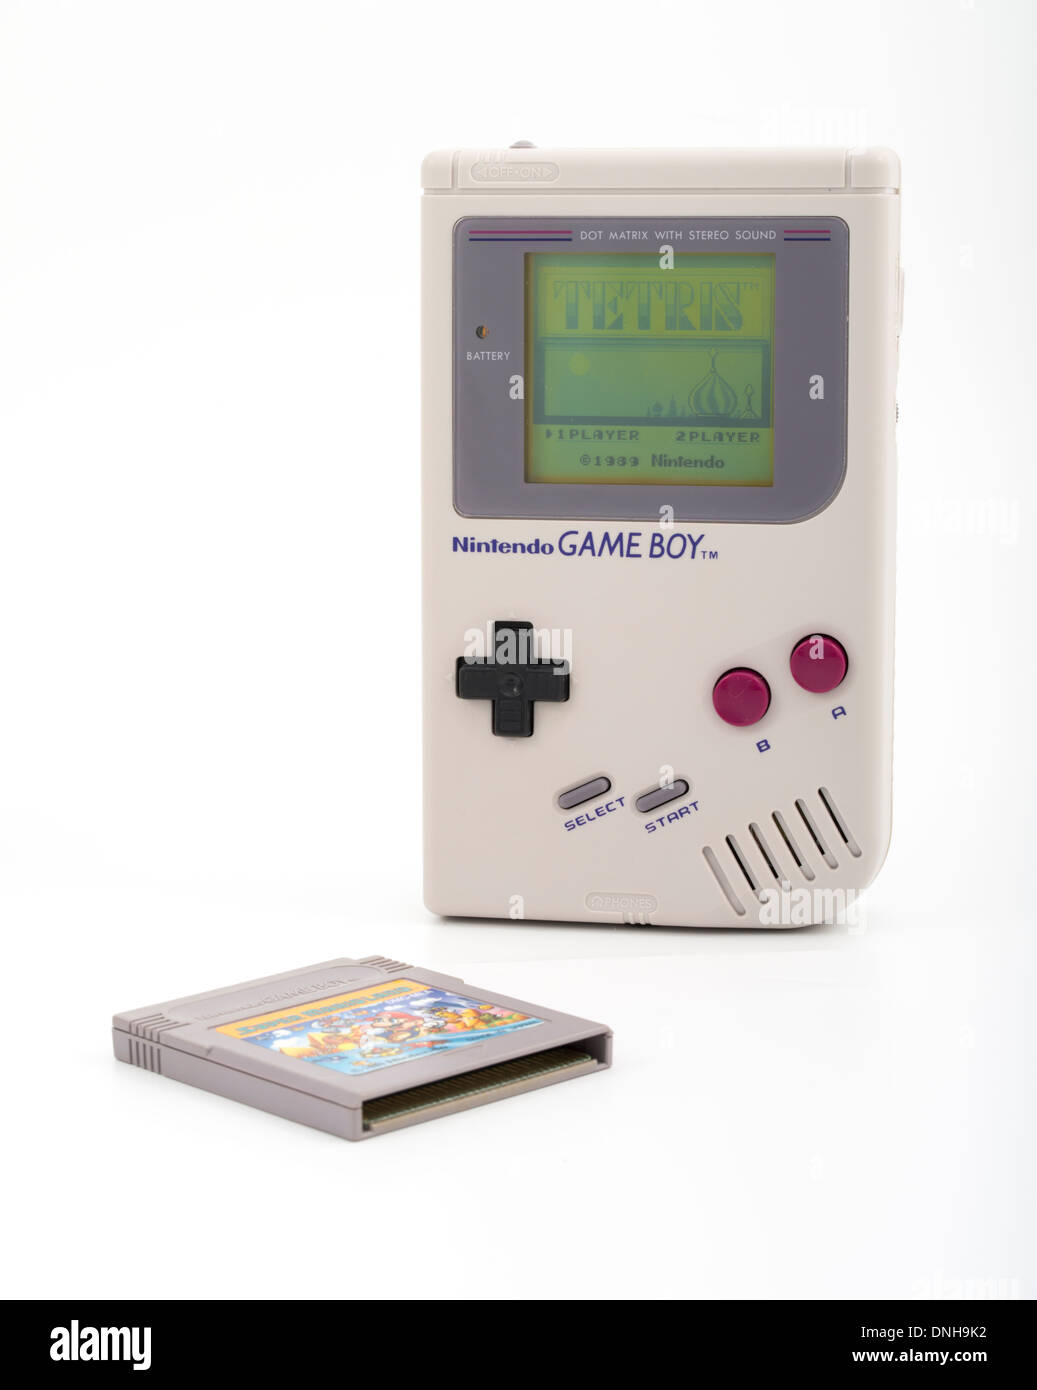 Nintendo Gameboy mit Mario Patrone und TETRIS-Spiel auf dem Bildschirm angezeigt. DMG-001-Originalversion in grau / grau aus Japan Stockfoto